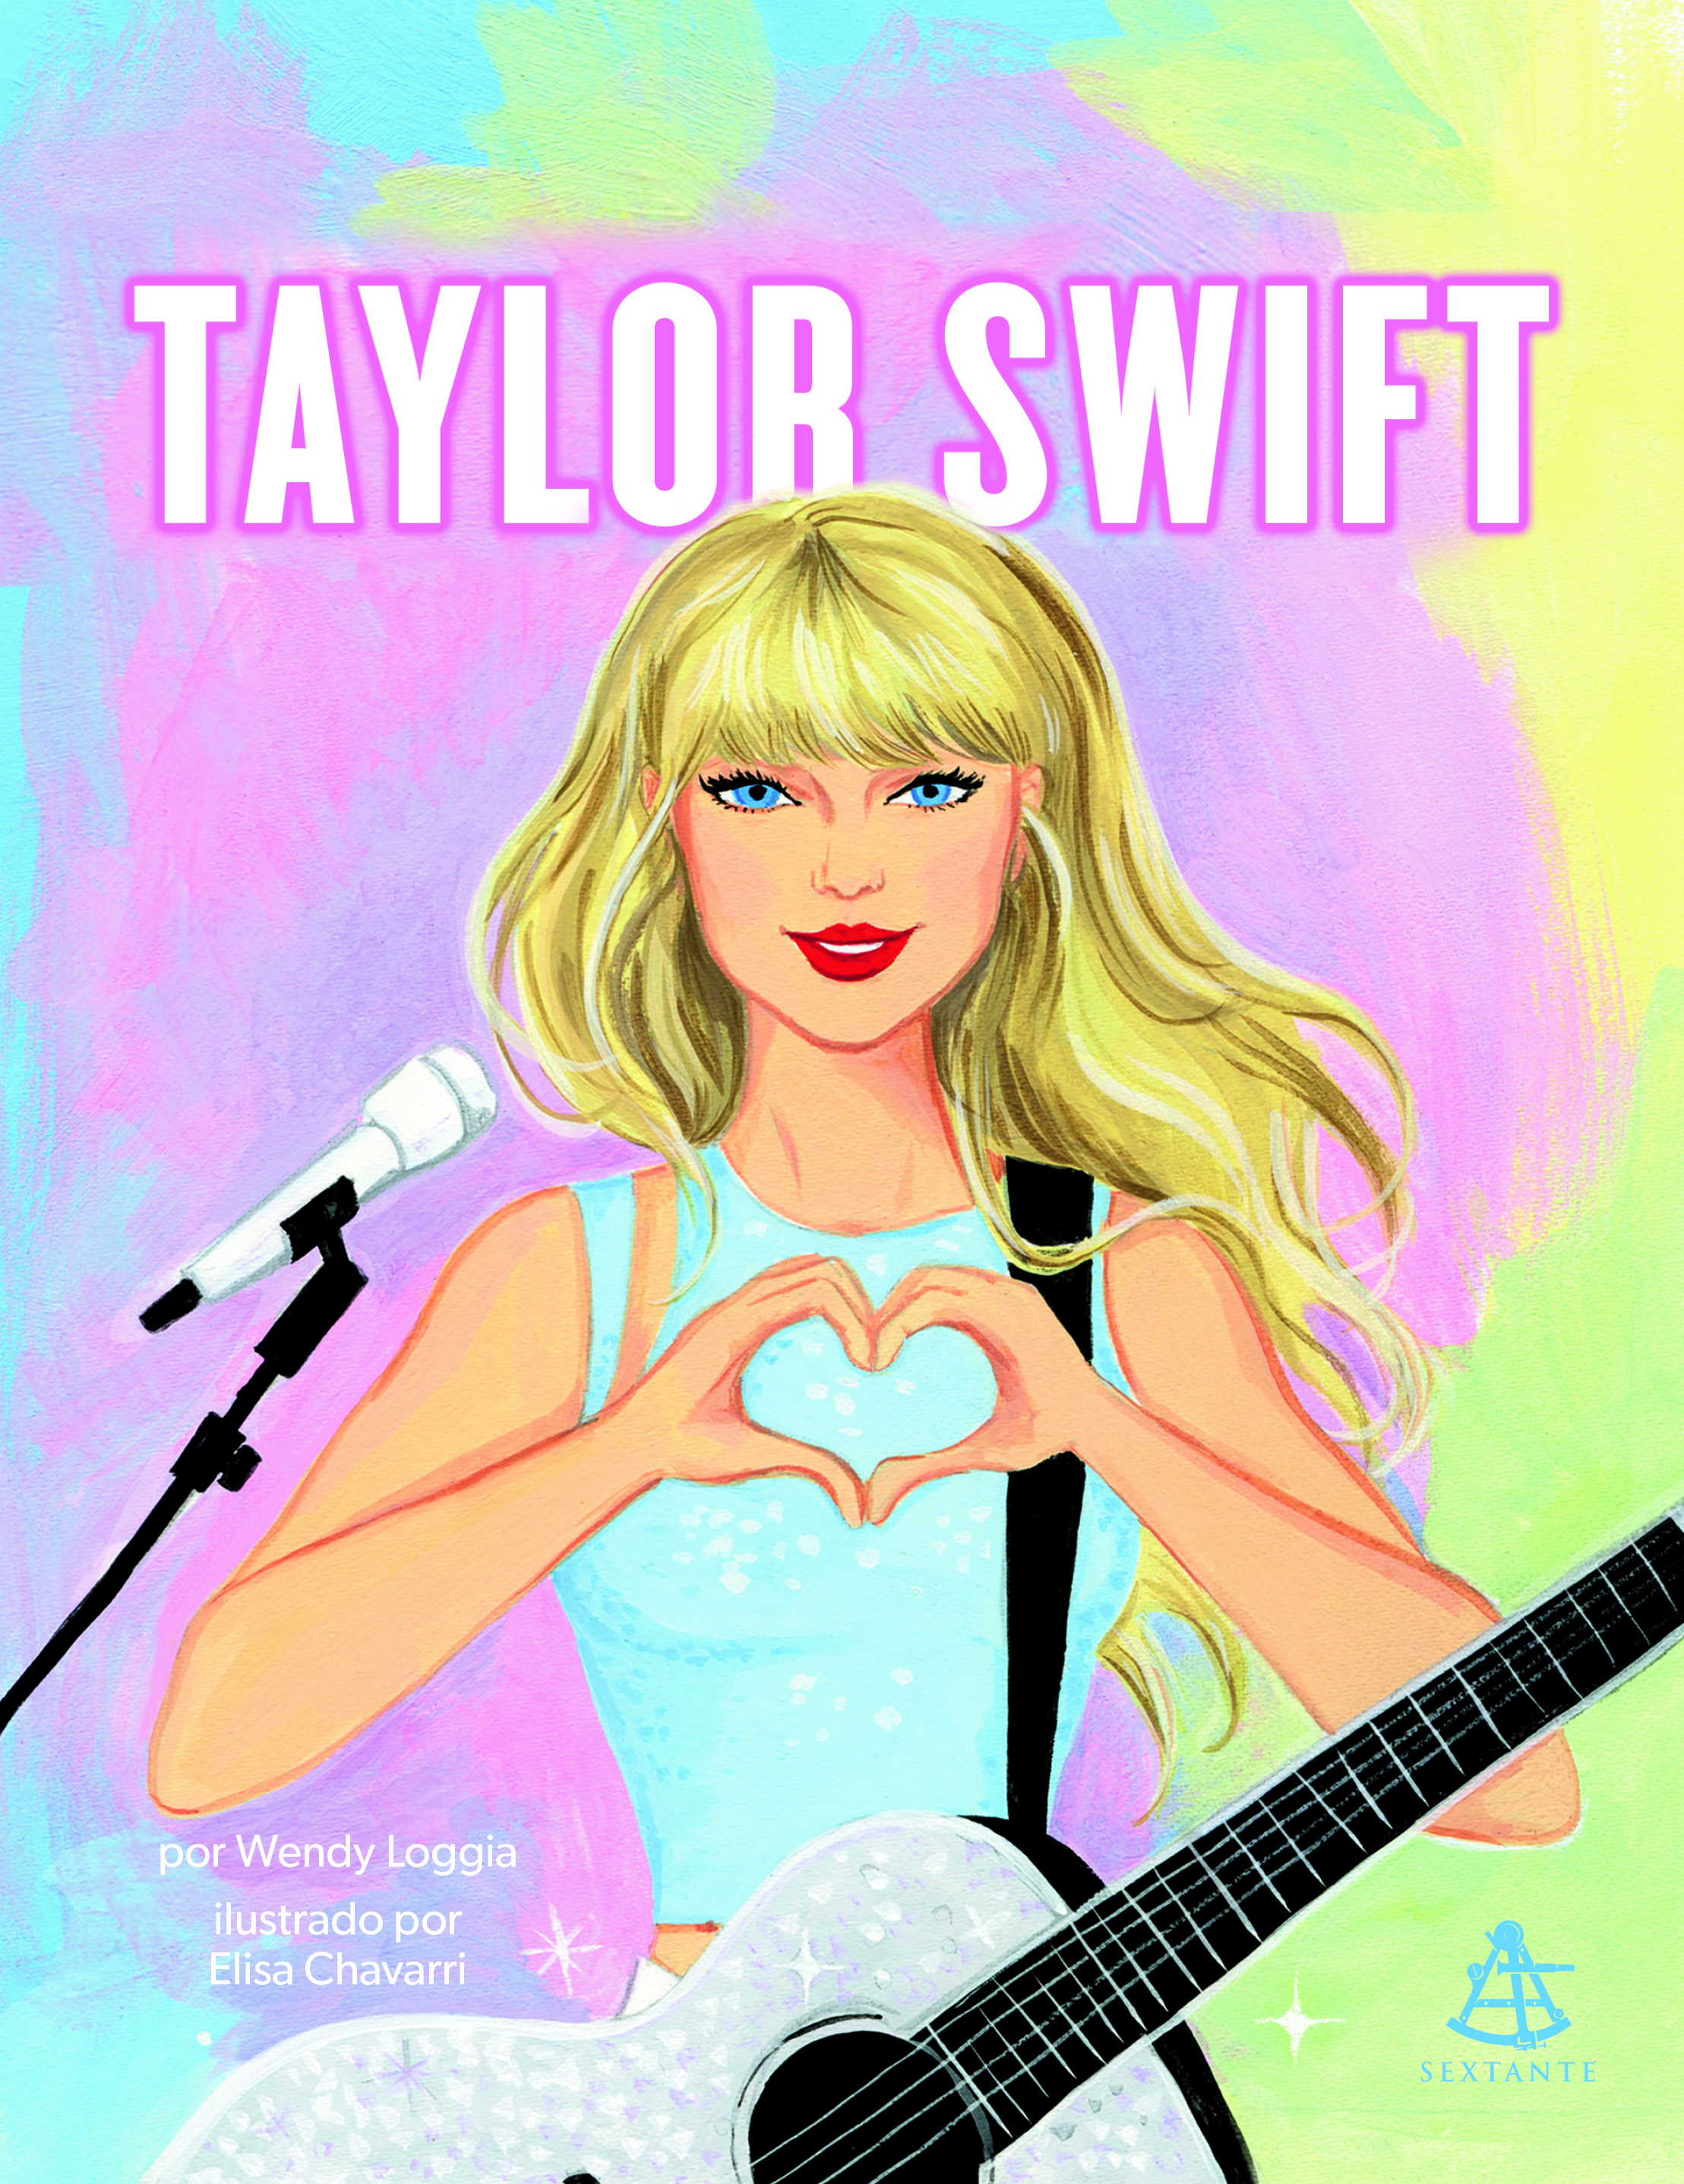 Capa do livro Taylor Swift com ilustração da cantora fazendo um coração com as mãos